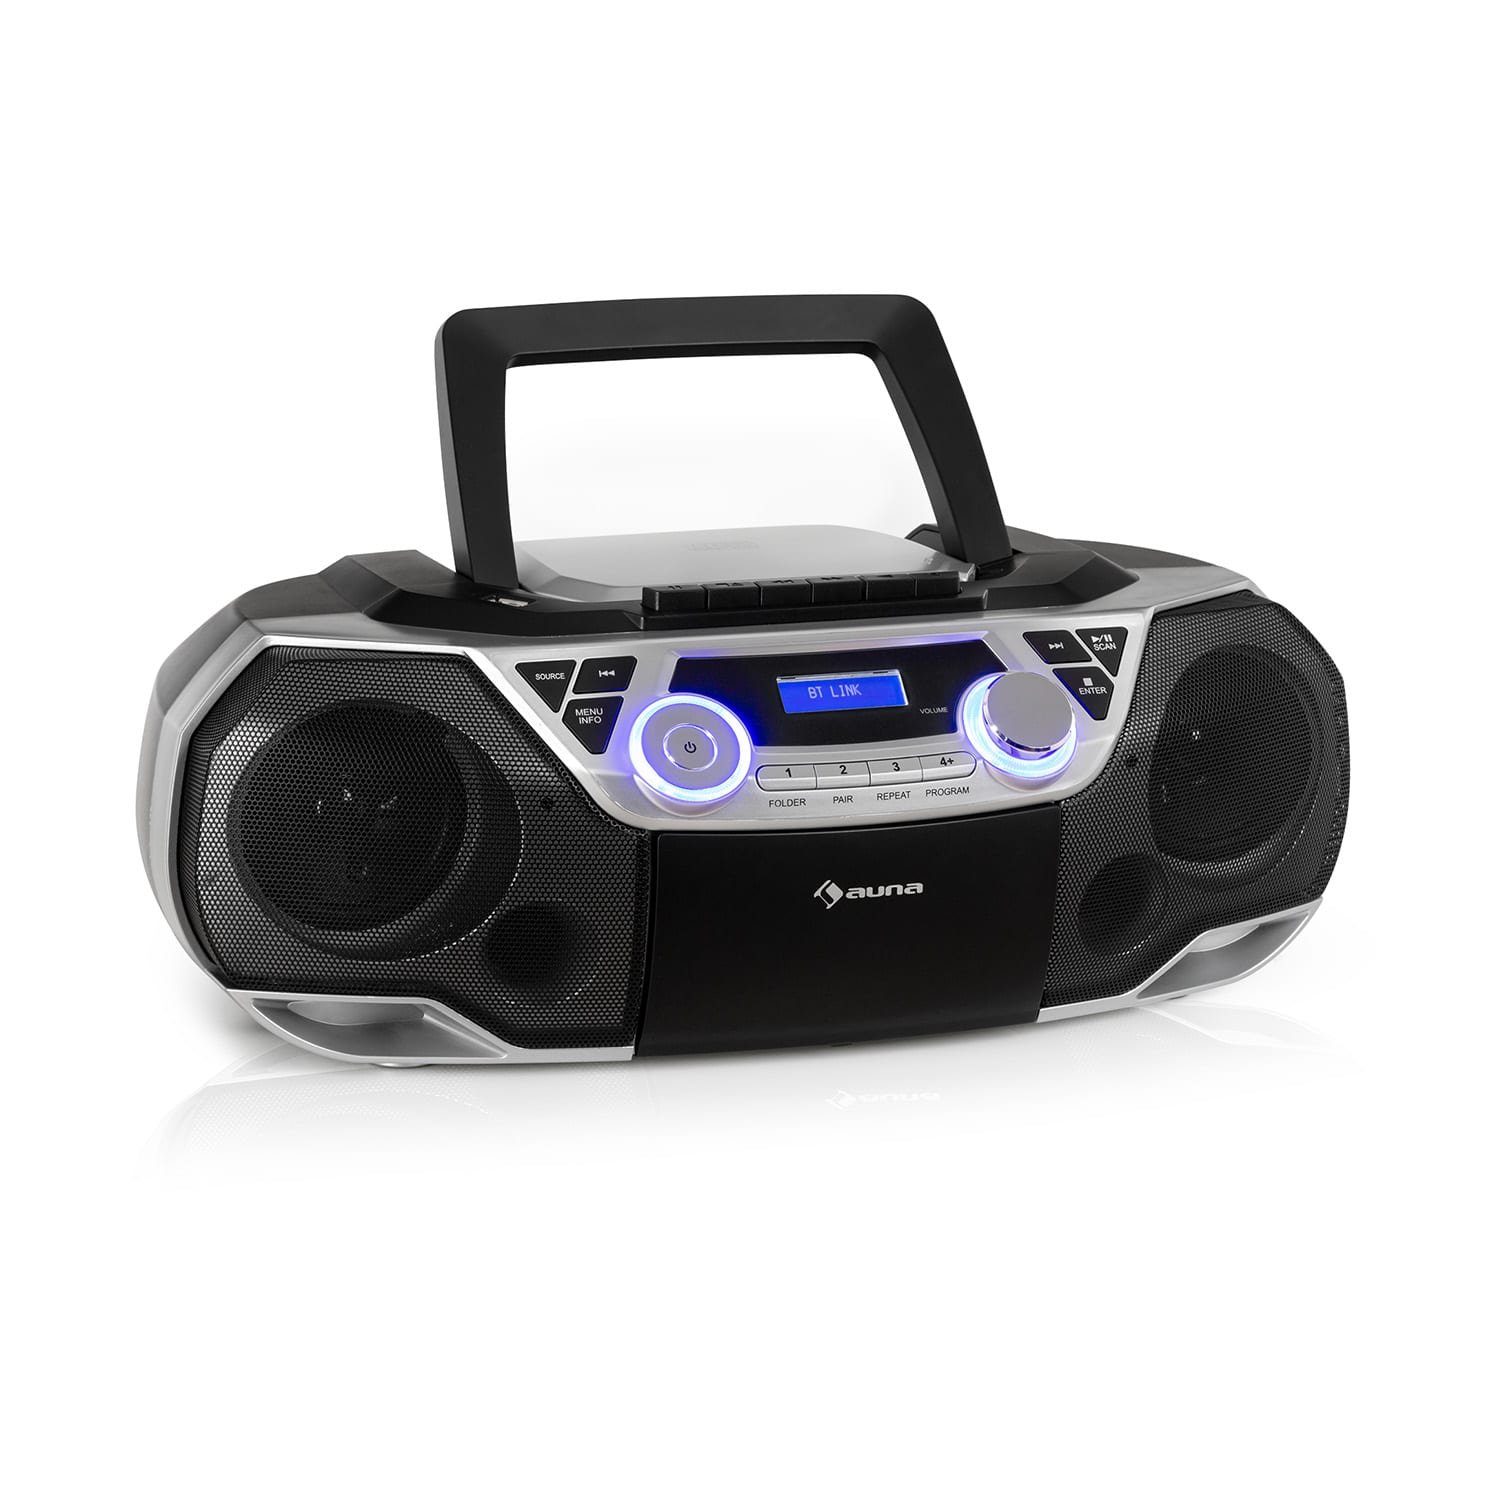 Roadie Kinder Soundbox) Bluetooth CD Radio UKW-Radiotuner, und Spieler tragbar CD 2K (DAB+ Auna Musikbox Radio Player